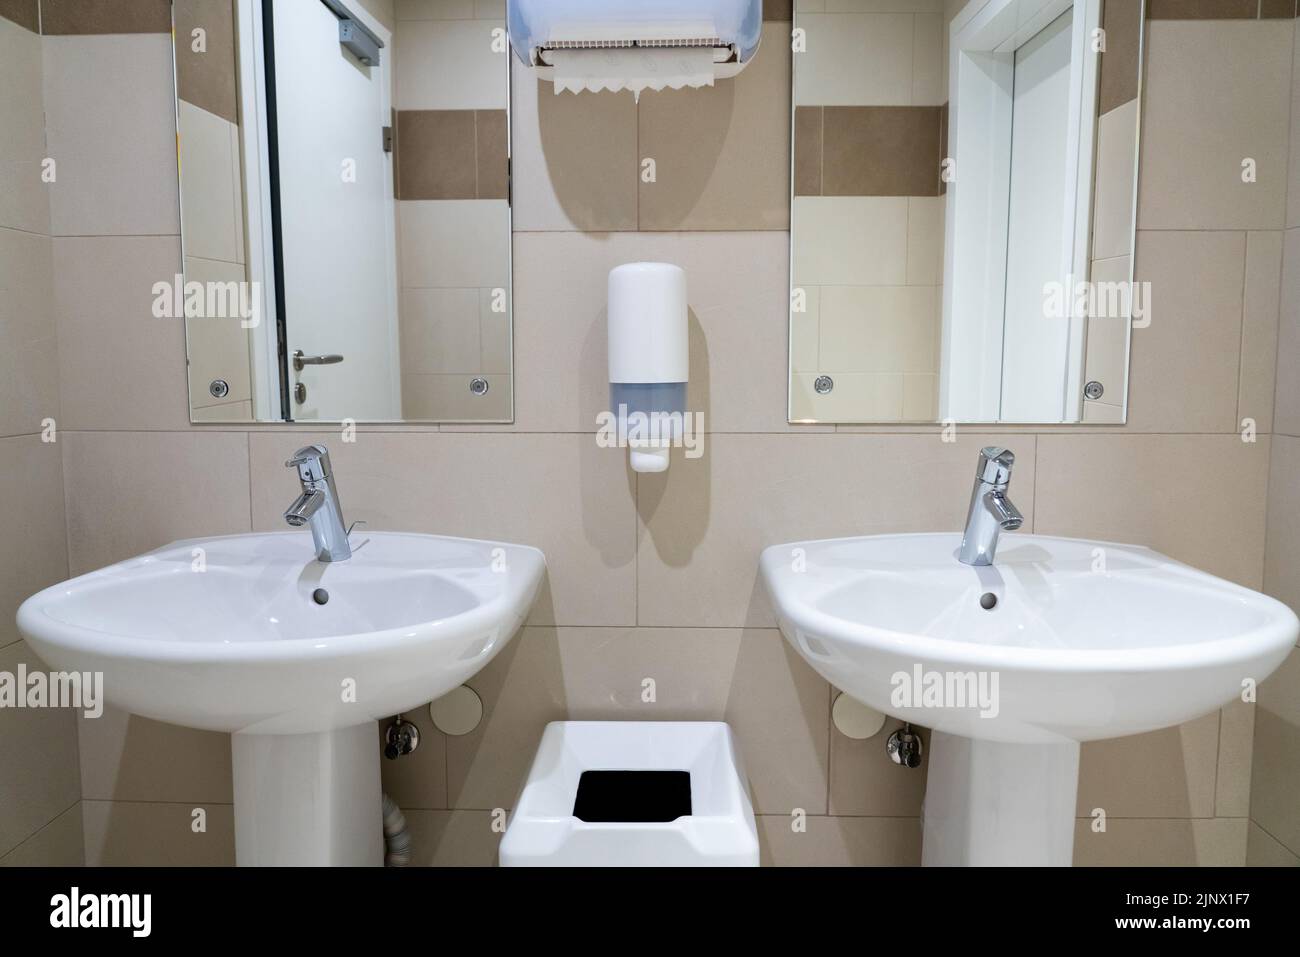 Deux lavabos symétriques dans une toilette publique moderne avec serviettes en papier et vaisselle à savon Banque D'Images